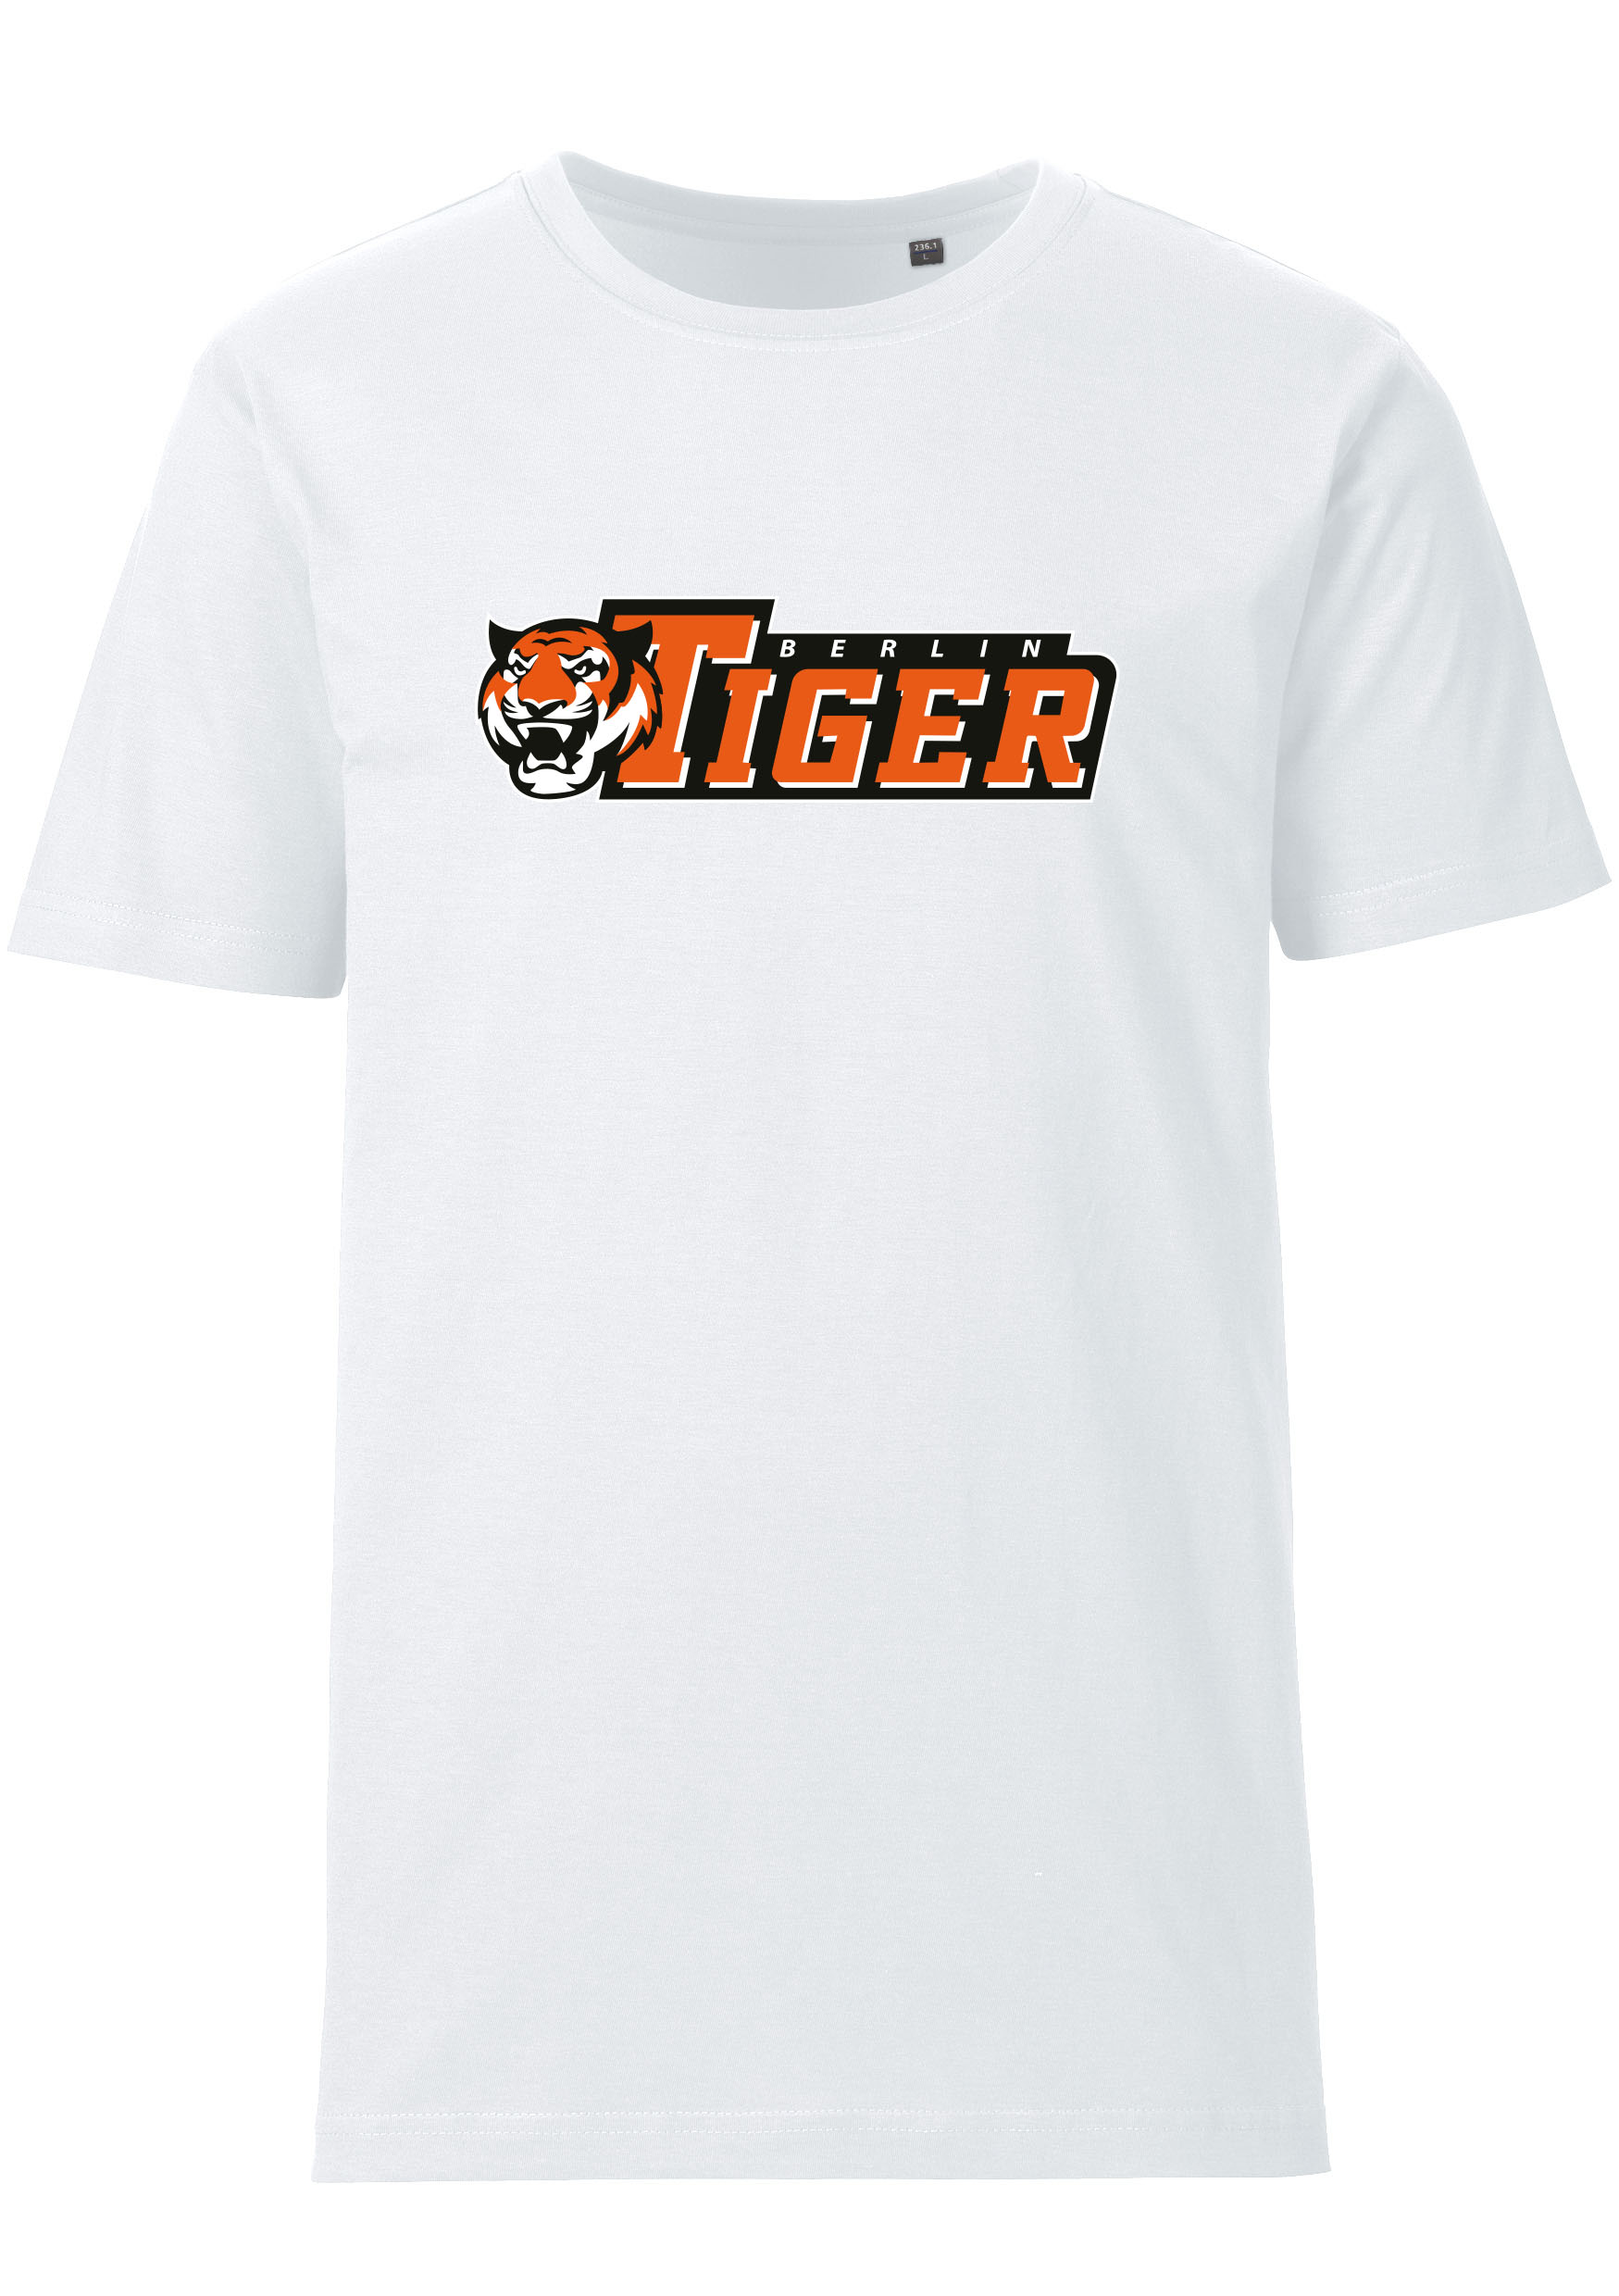 Berlin Tiger T-Shirt weiß